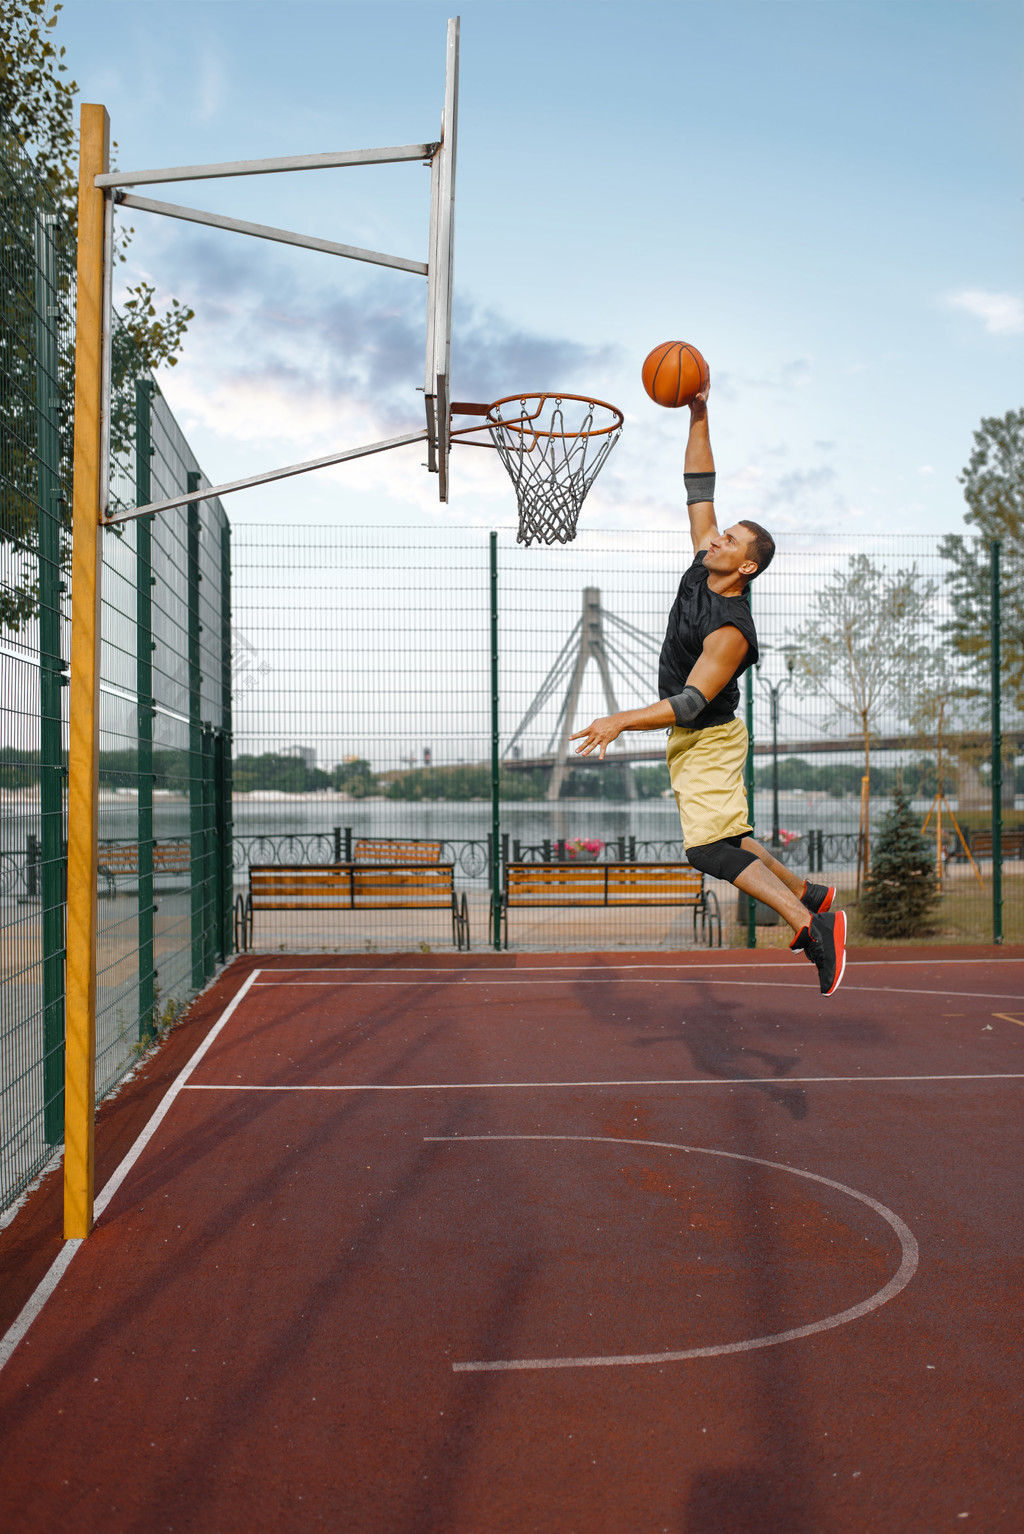 篮球运动员在跳投时投篮 男子运动员在街头篮球训练中的运动服成绩